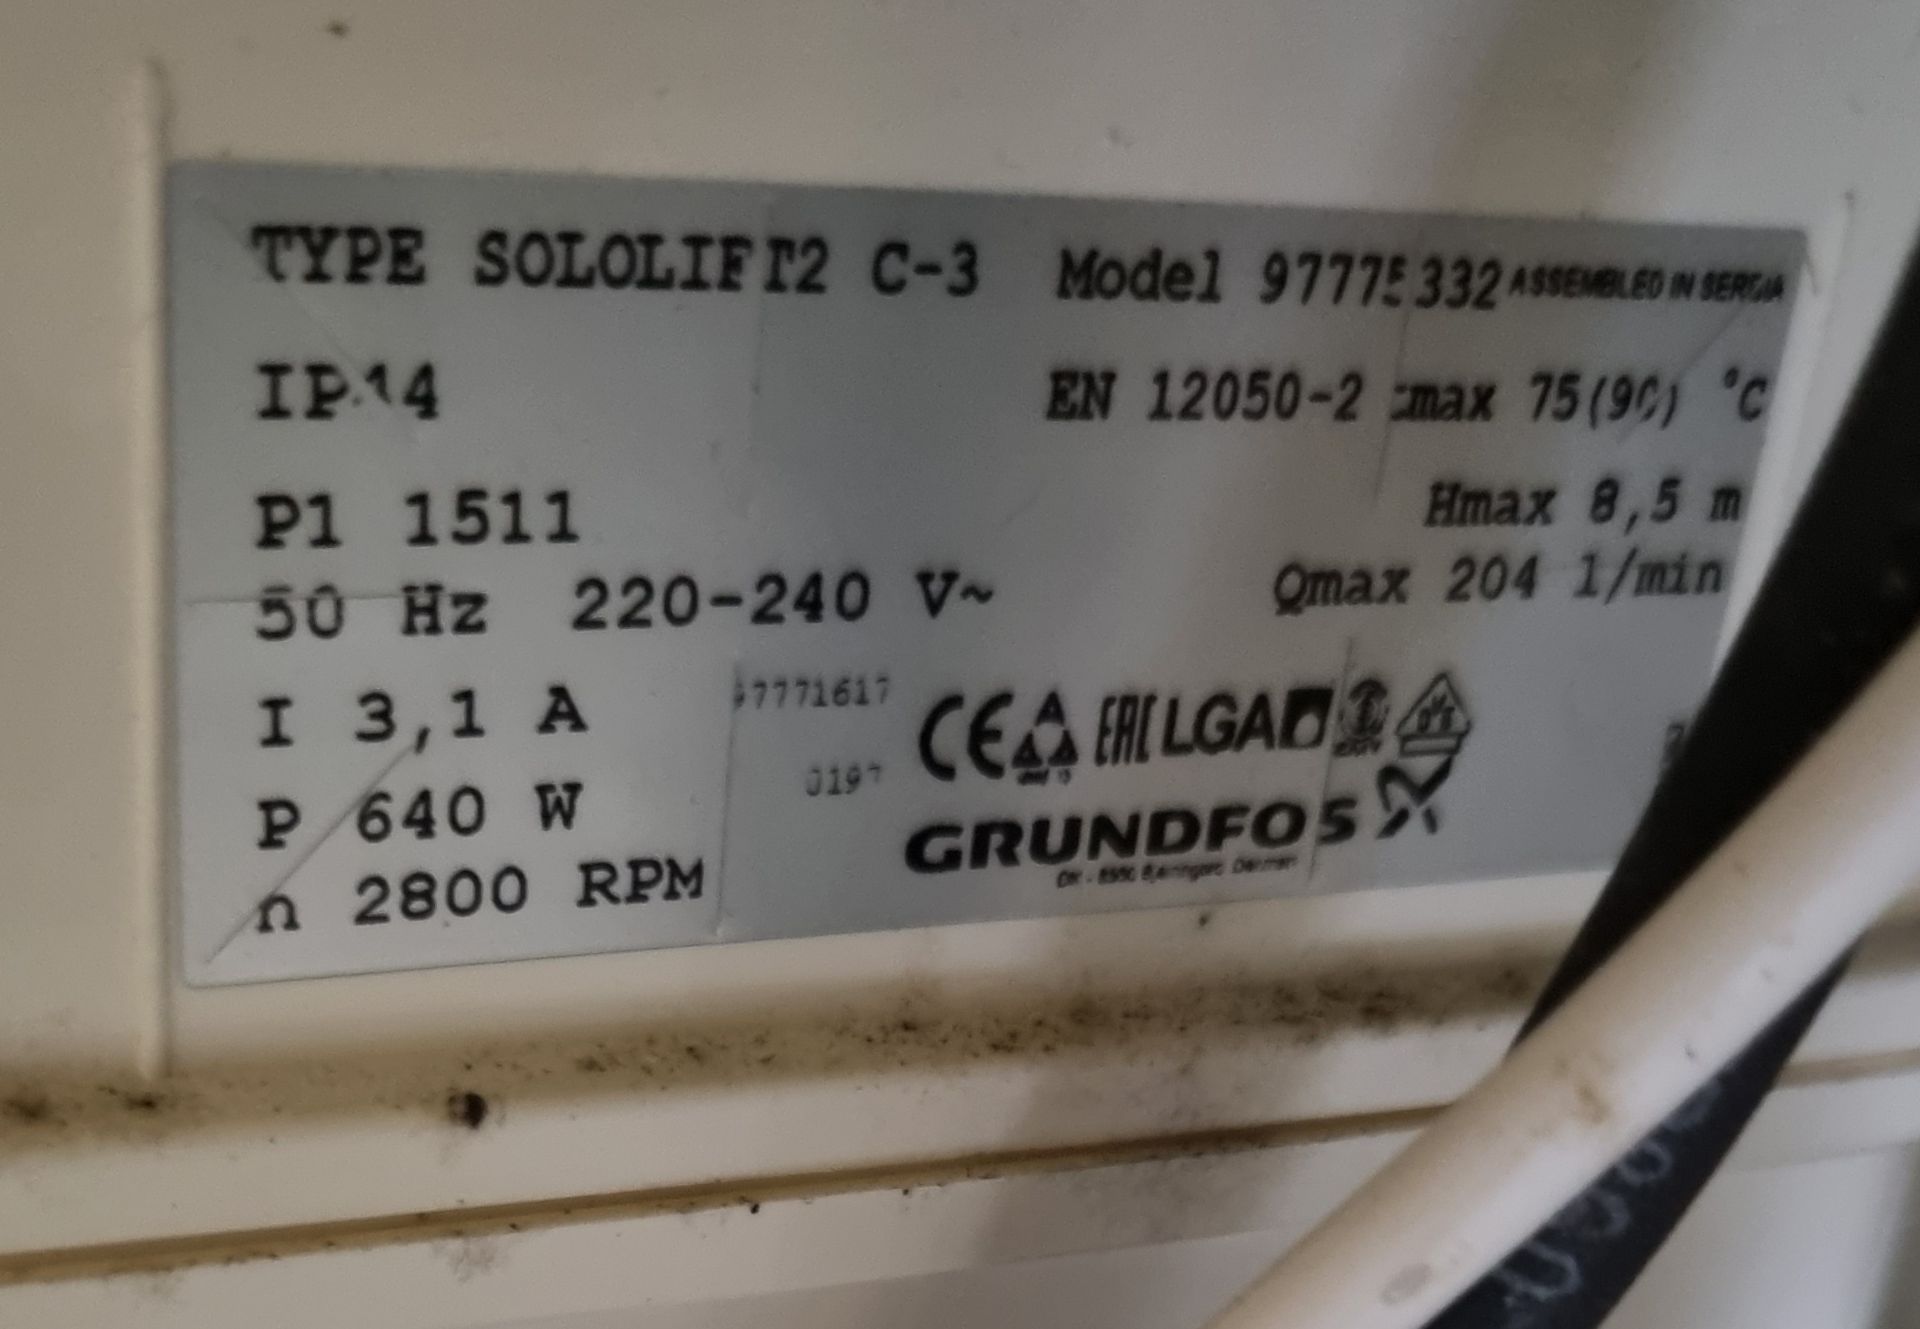 Grundfos - Sololift2 C-3 - Dishwasher, washing machine waste removal unit - 240V - Image 4 of 4